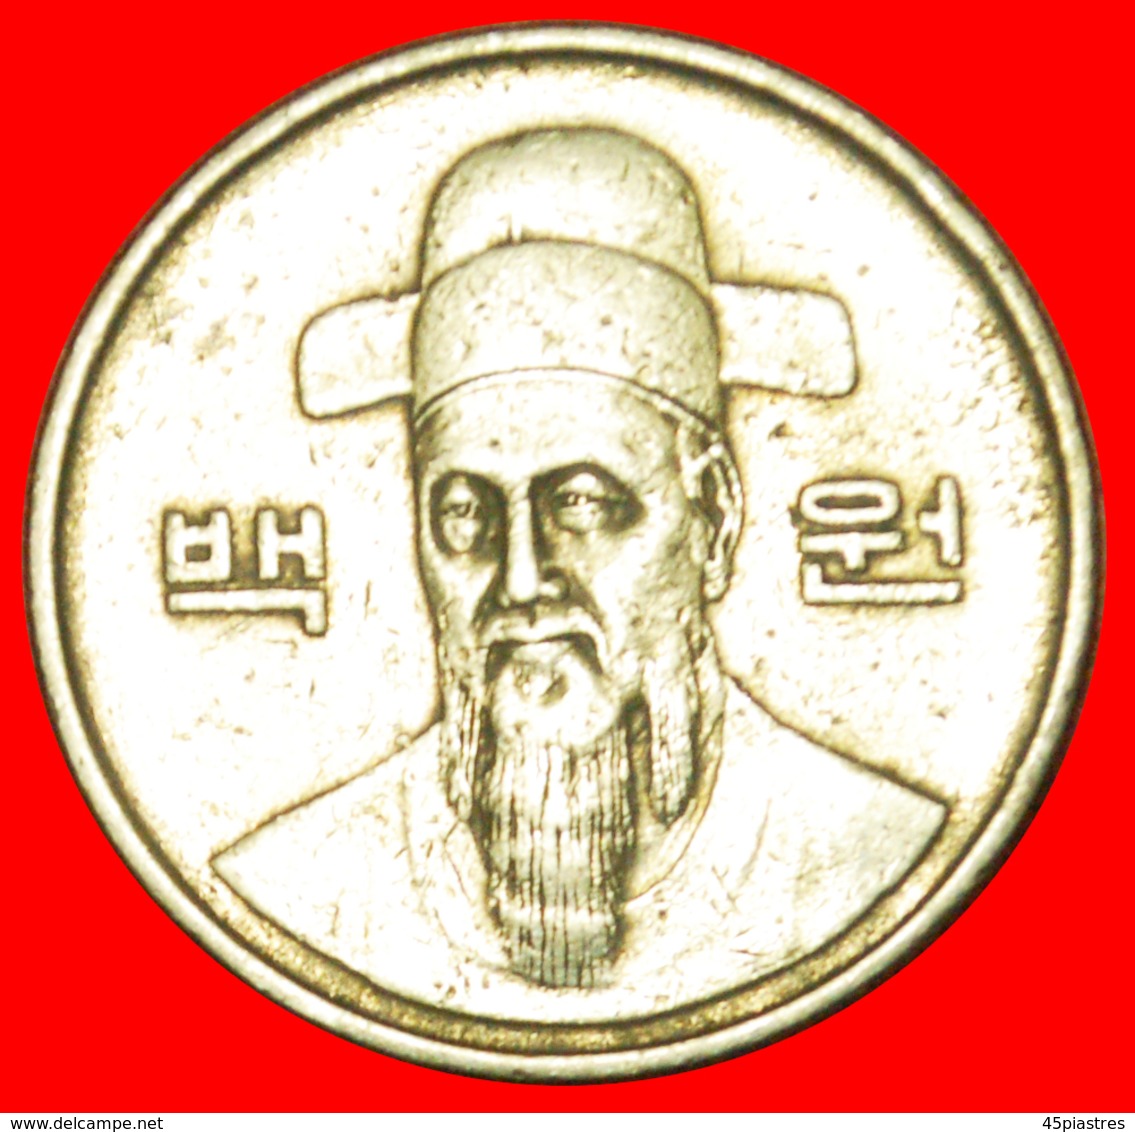 # ADMIRAL (1545-1598): SOUTH KOREA ★ 100 WON 1984! LOW START ★ NO RESERVE! - Corée Du Sud